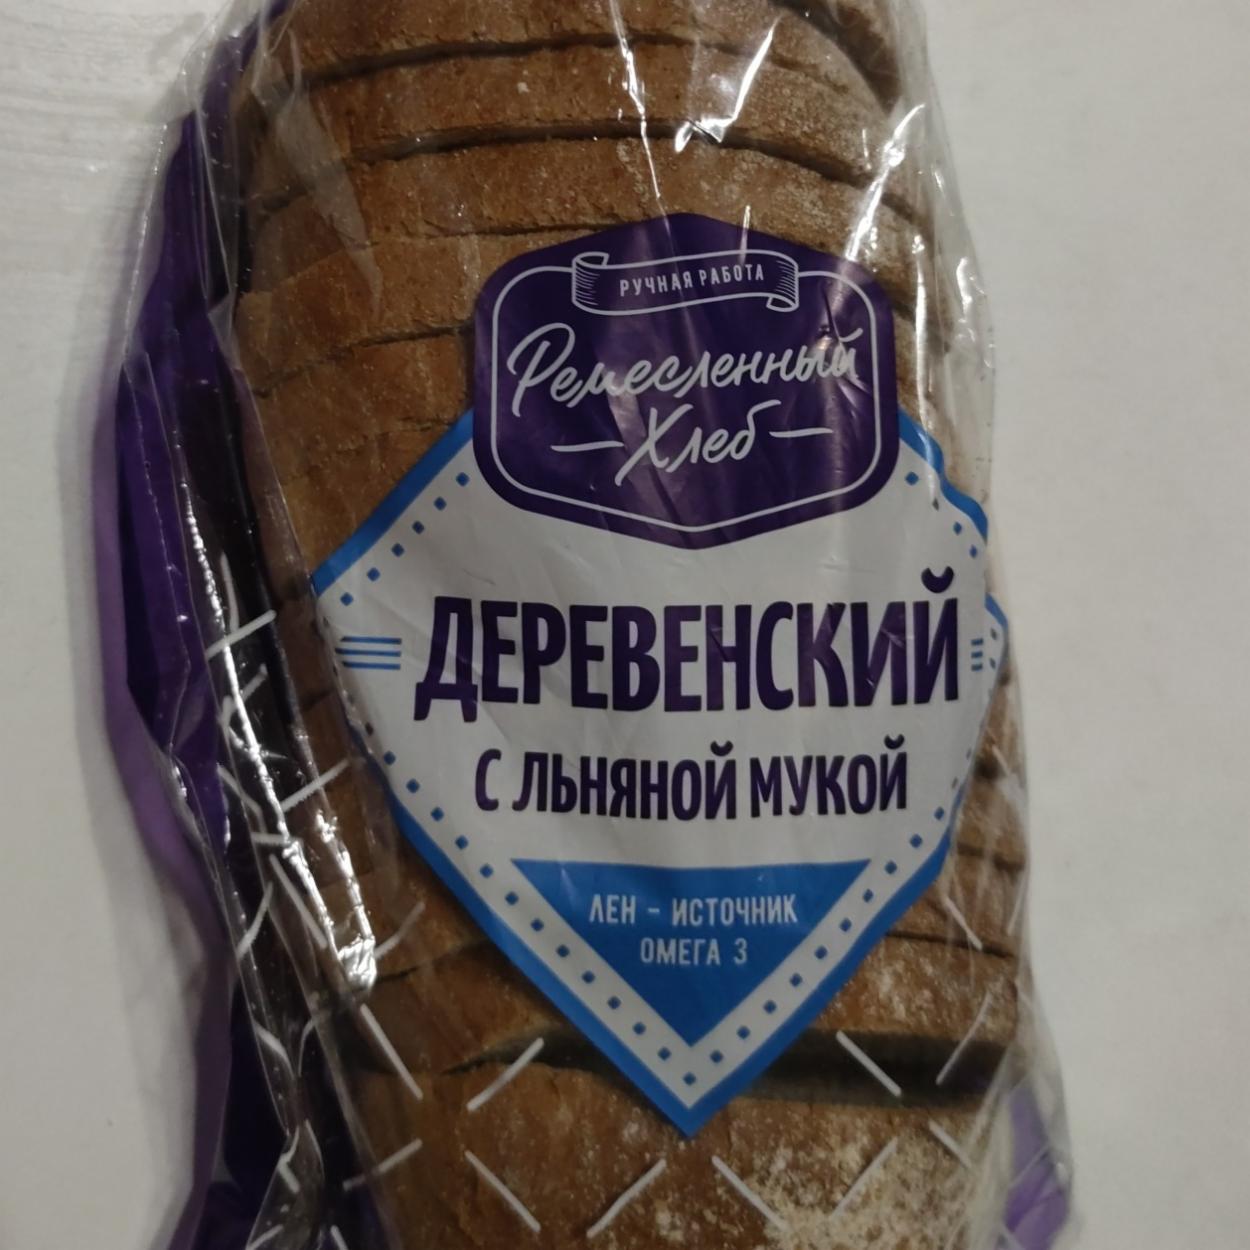 Фото - Деревенский с льняной мукой Ремесленный хлеб